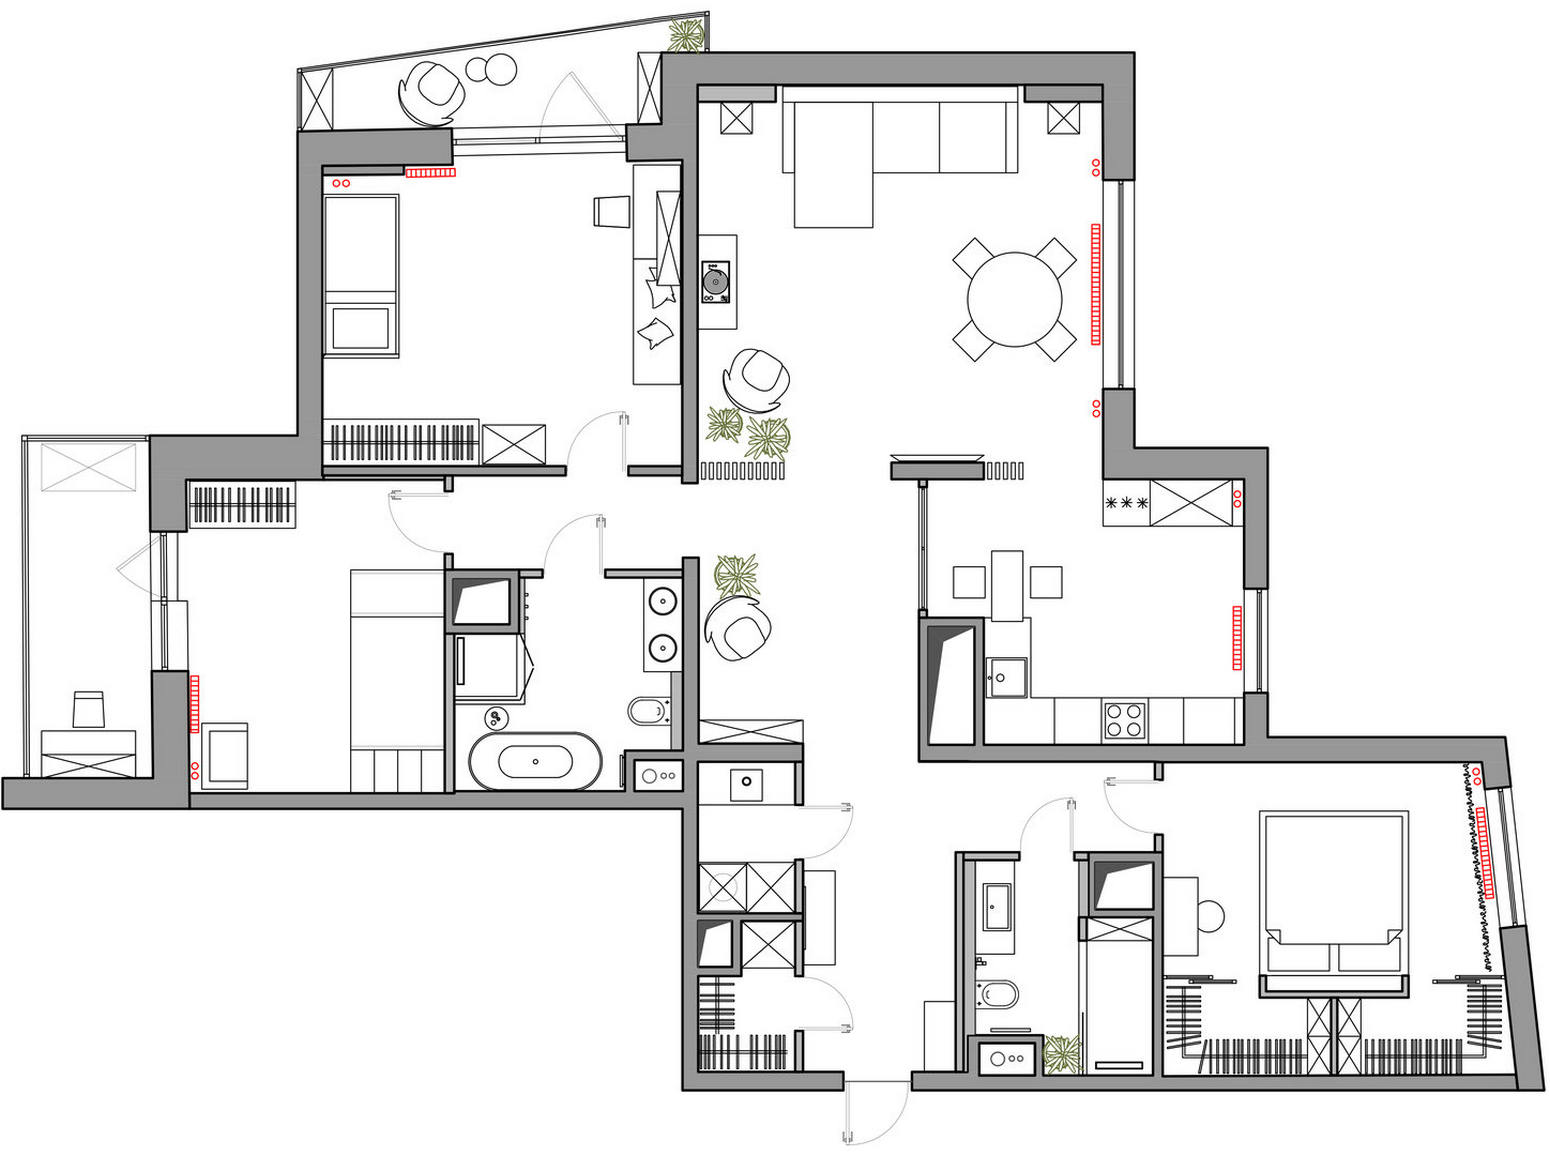 Terrazzo burkolat, lágy színek, skandináv tapéták - család két gyermekkel négyszobás lakásban